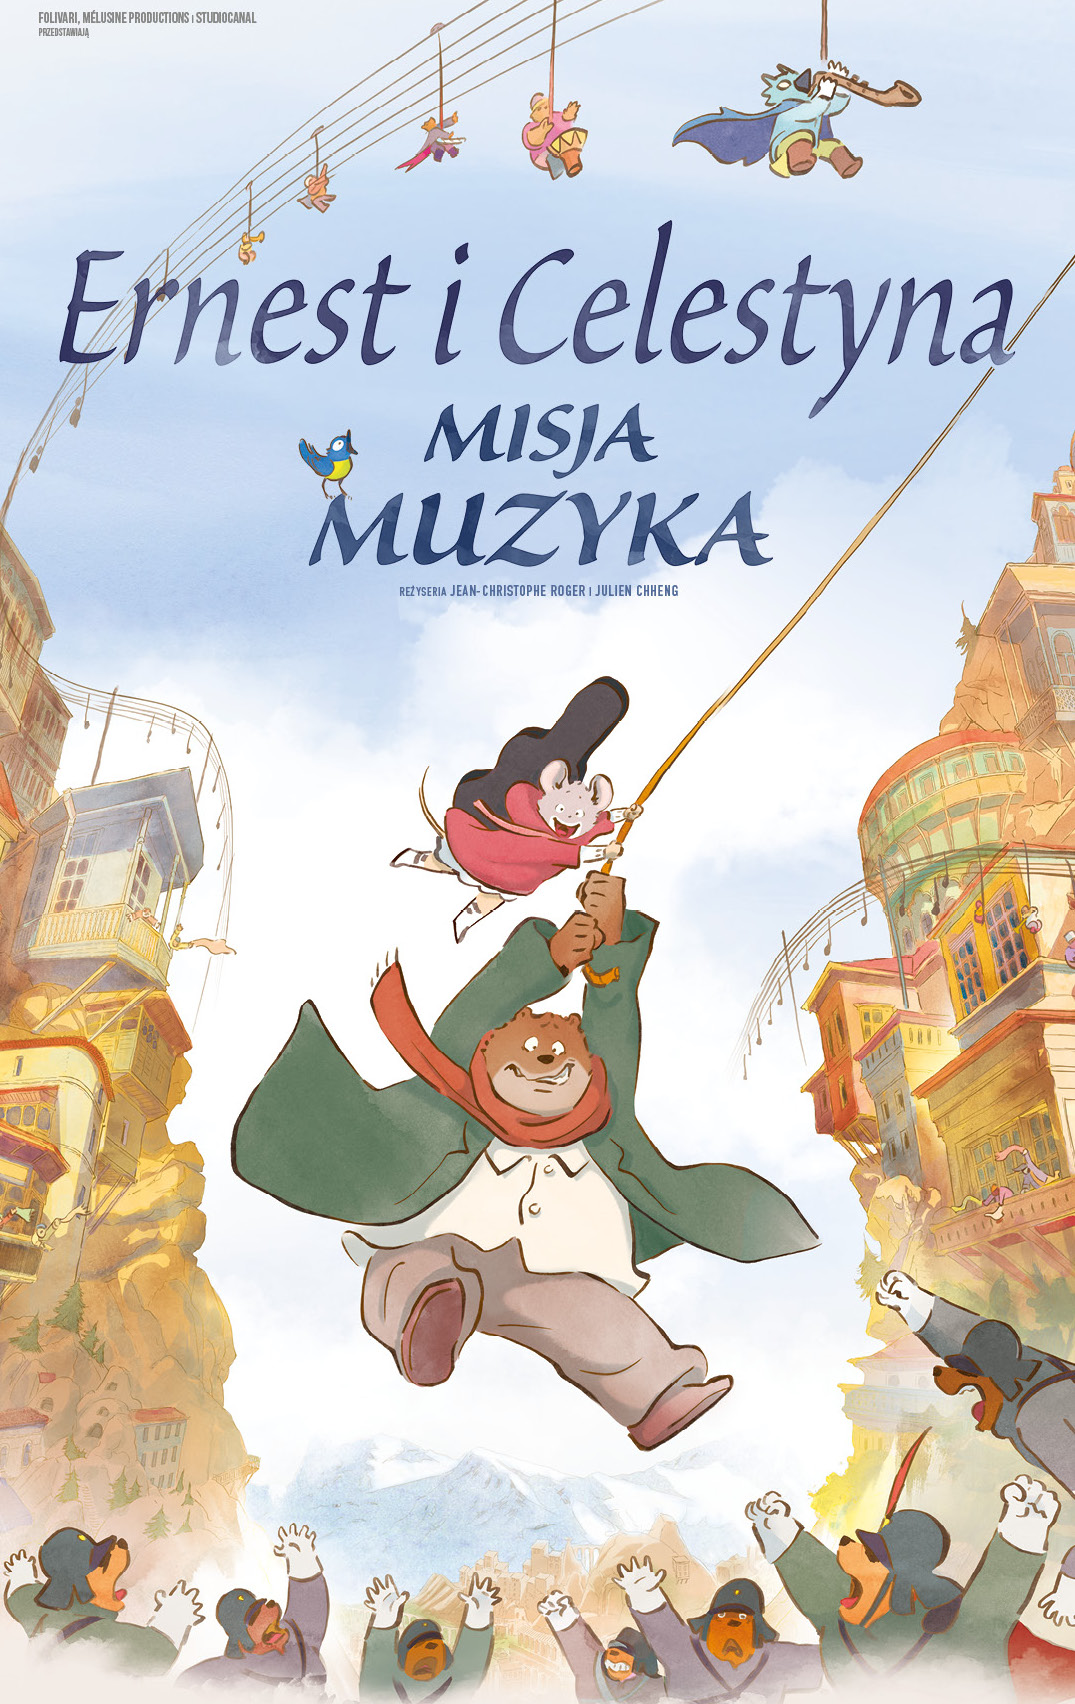 Plakat promujący film “Ernest i Celestyna: Misja muzyka”. Przedstawia niedźwiedzia i myszkę bujających się na linie nad miastem.